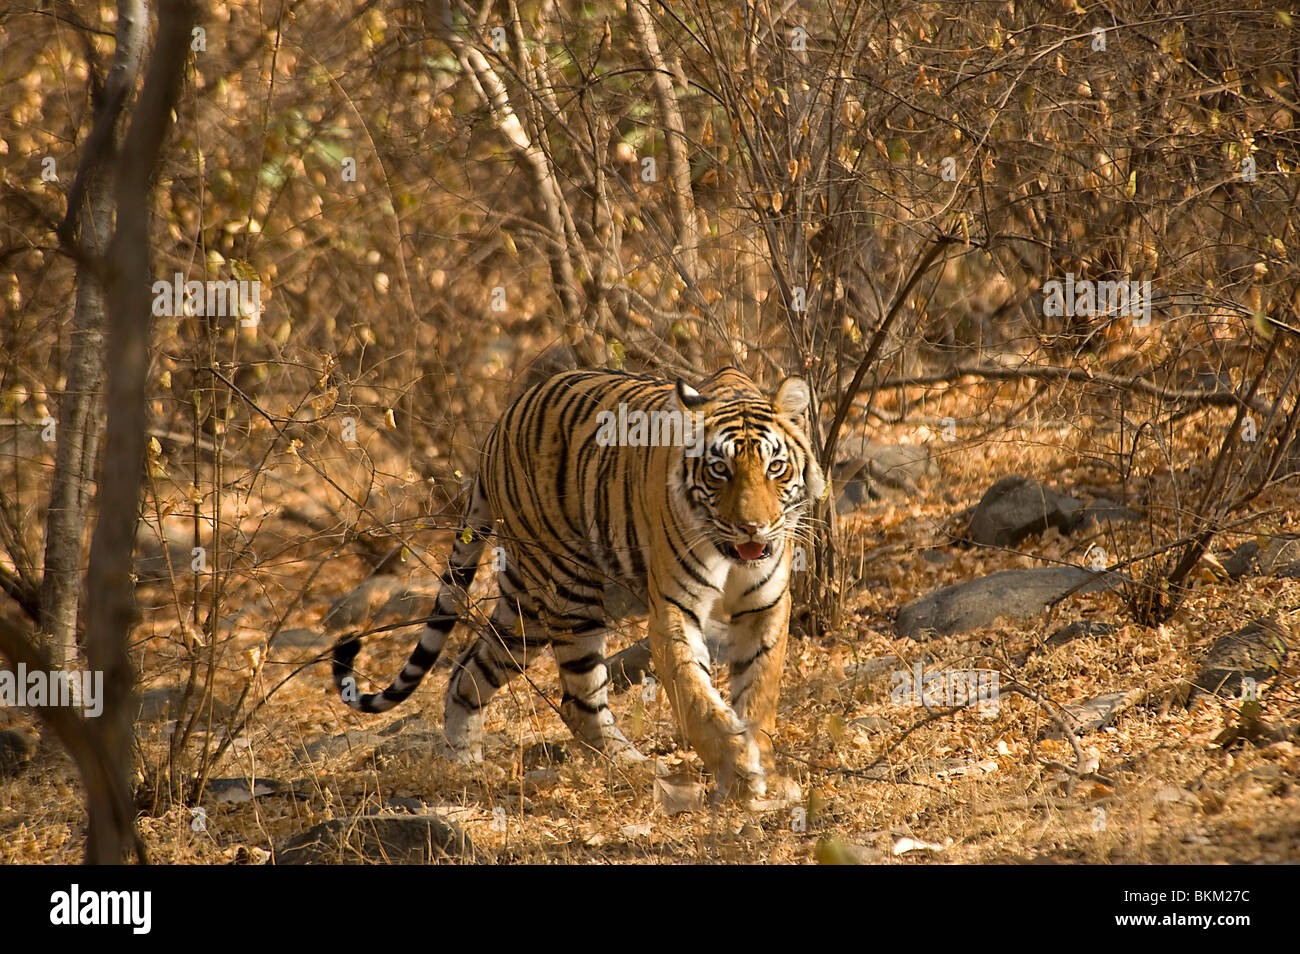 Homme tigre du Bengale, Panthera tigris, marchant à travers broussailles, Ranthambore N P, Inde Banque D'Images